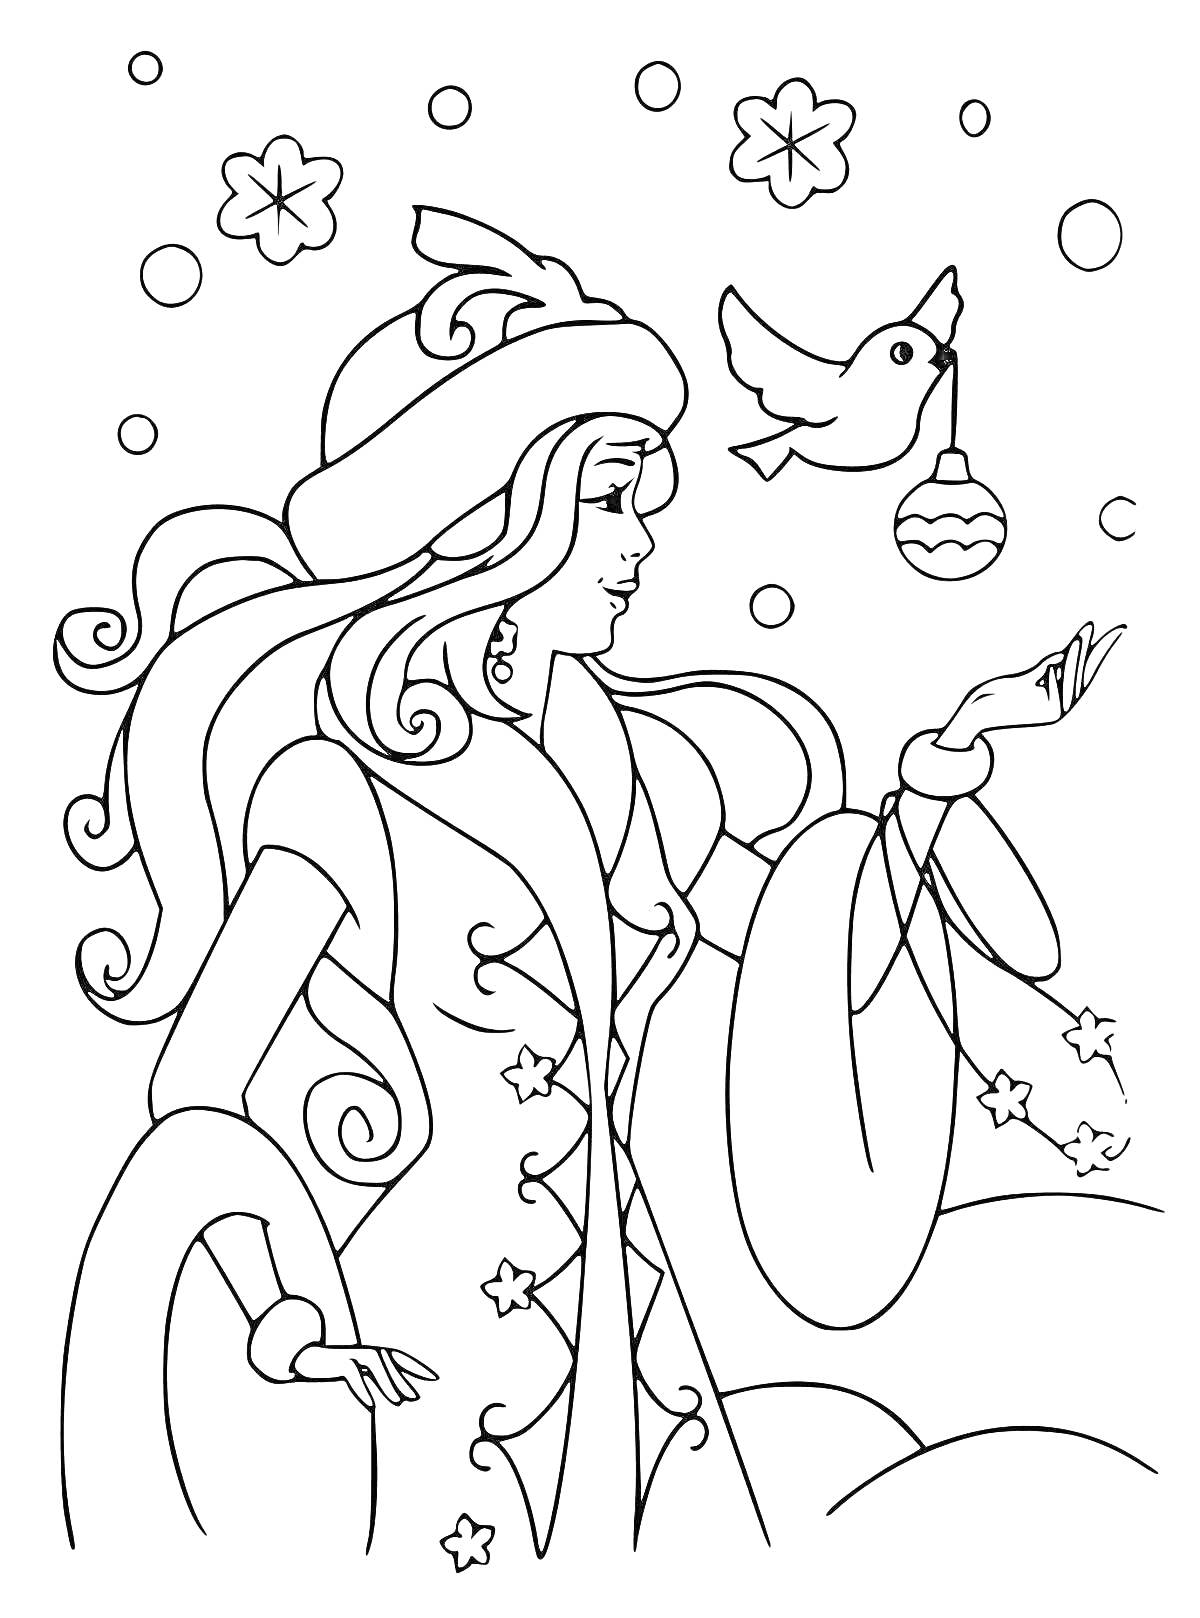 Раскраска Снегурочка с птицей, держащей ёлочную игрушку, снежинки и звезды вокруг